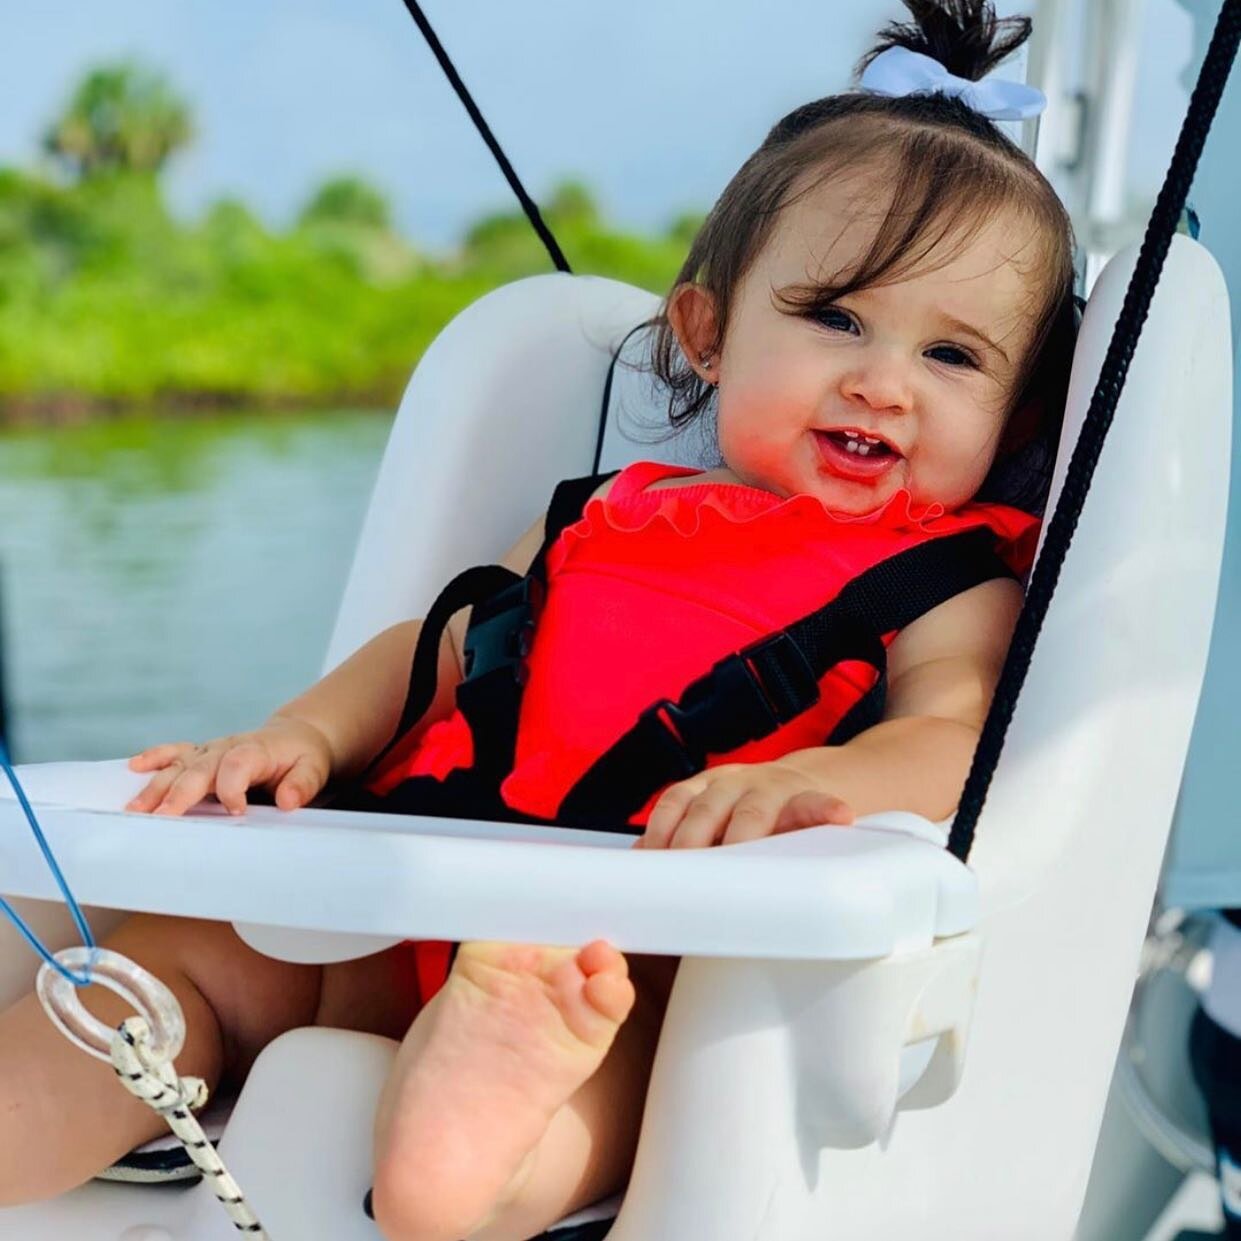 baby boat swing